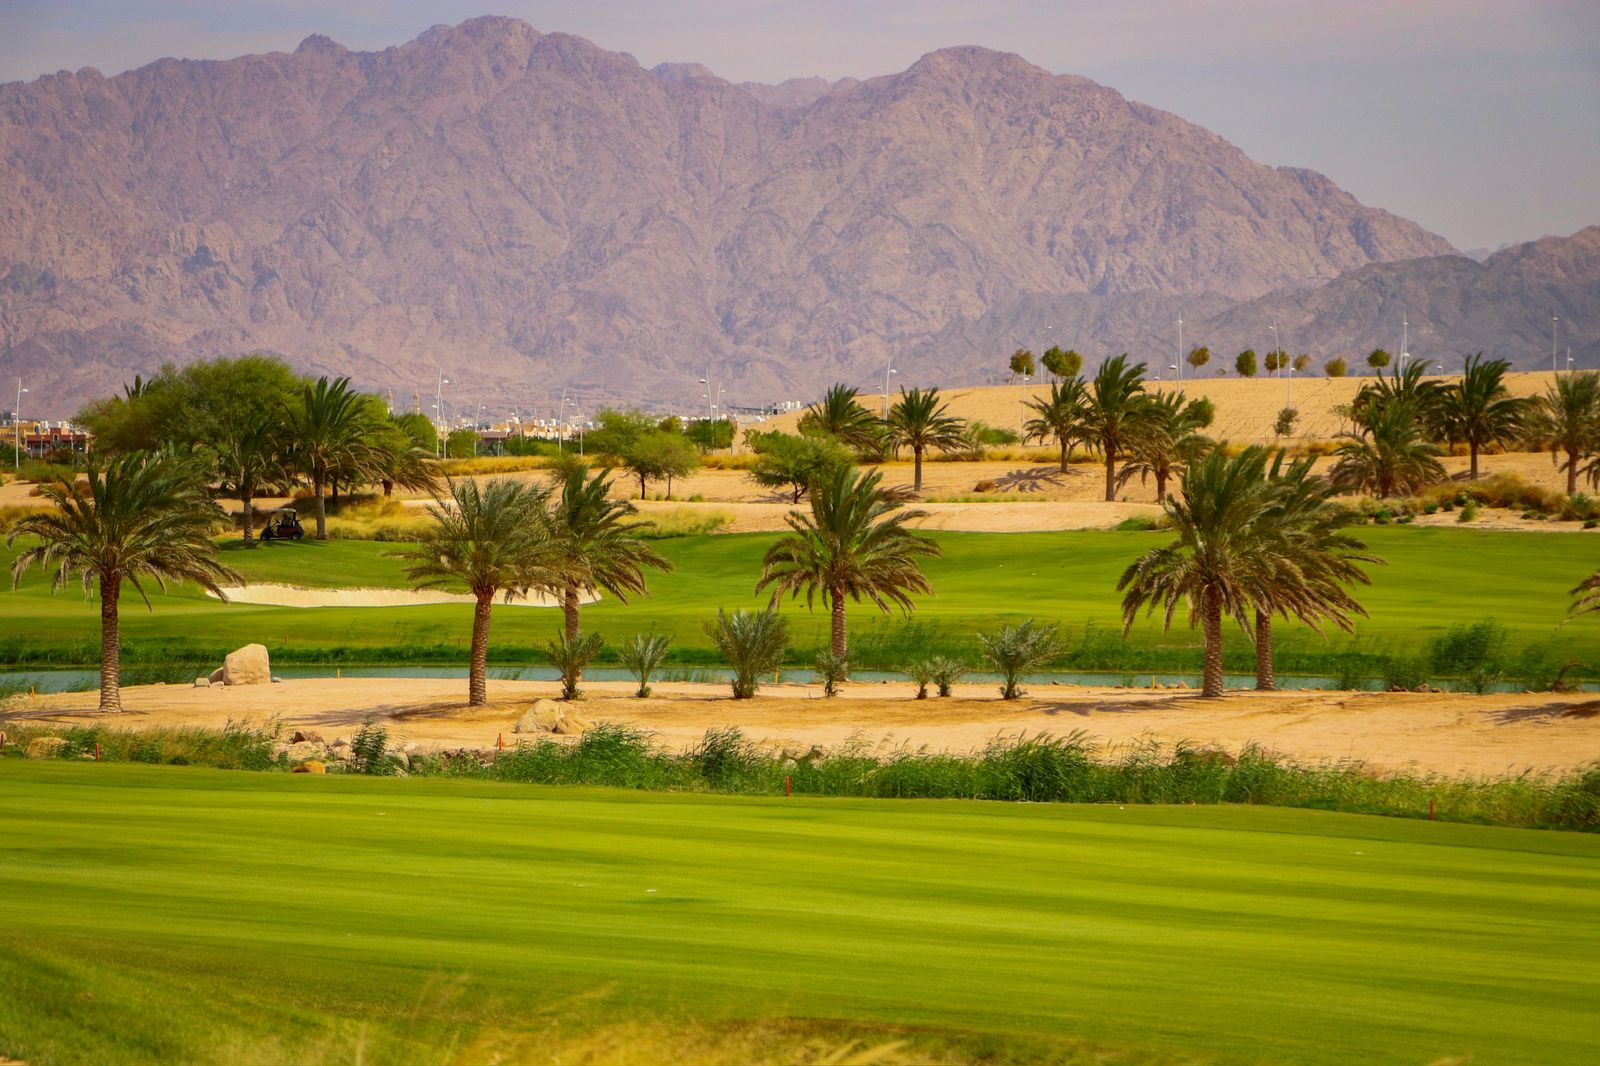 بطولة الأردن المفتوحة للجولف فرصة مثالية للترويج للعقبة سياحيا